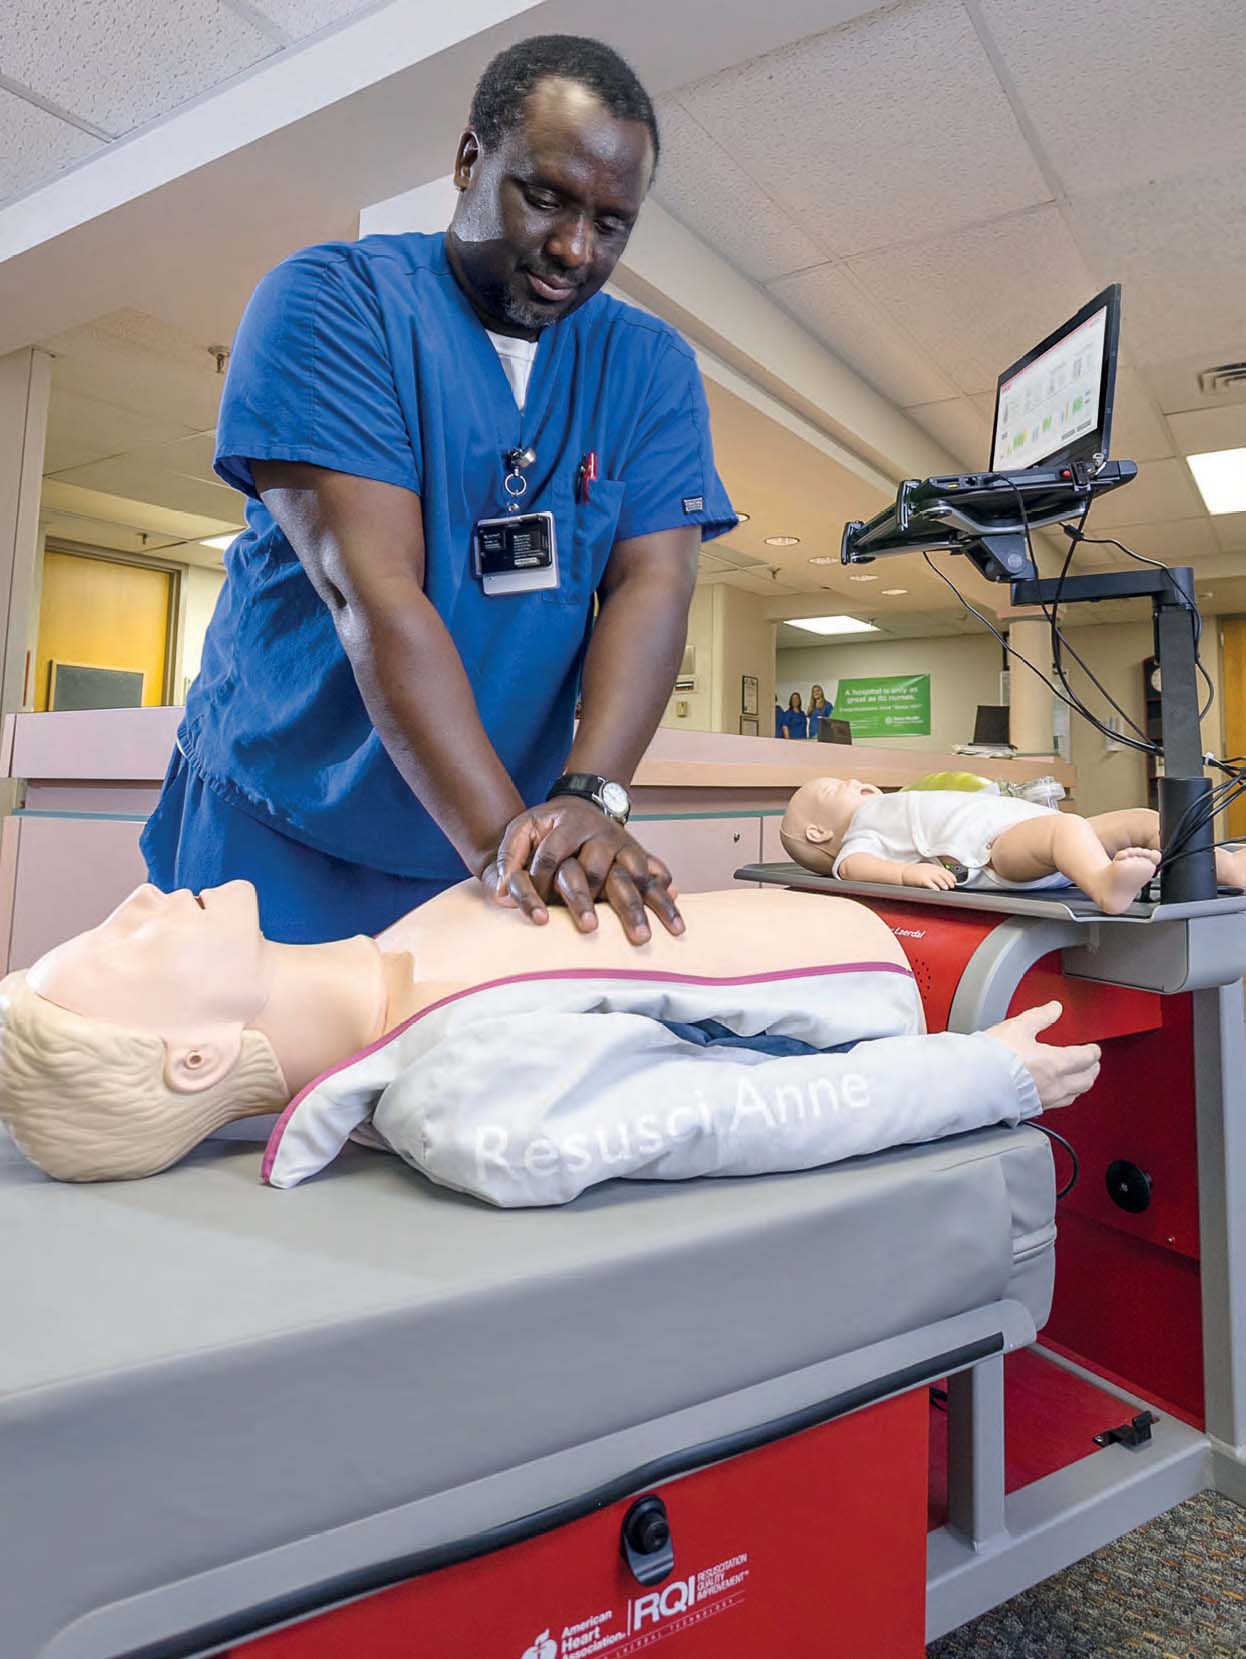 A man preforming CPR on a Anna doll